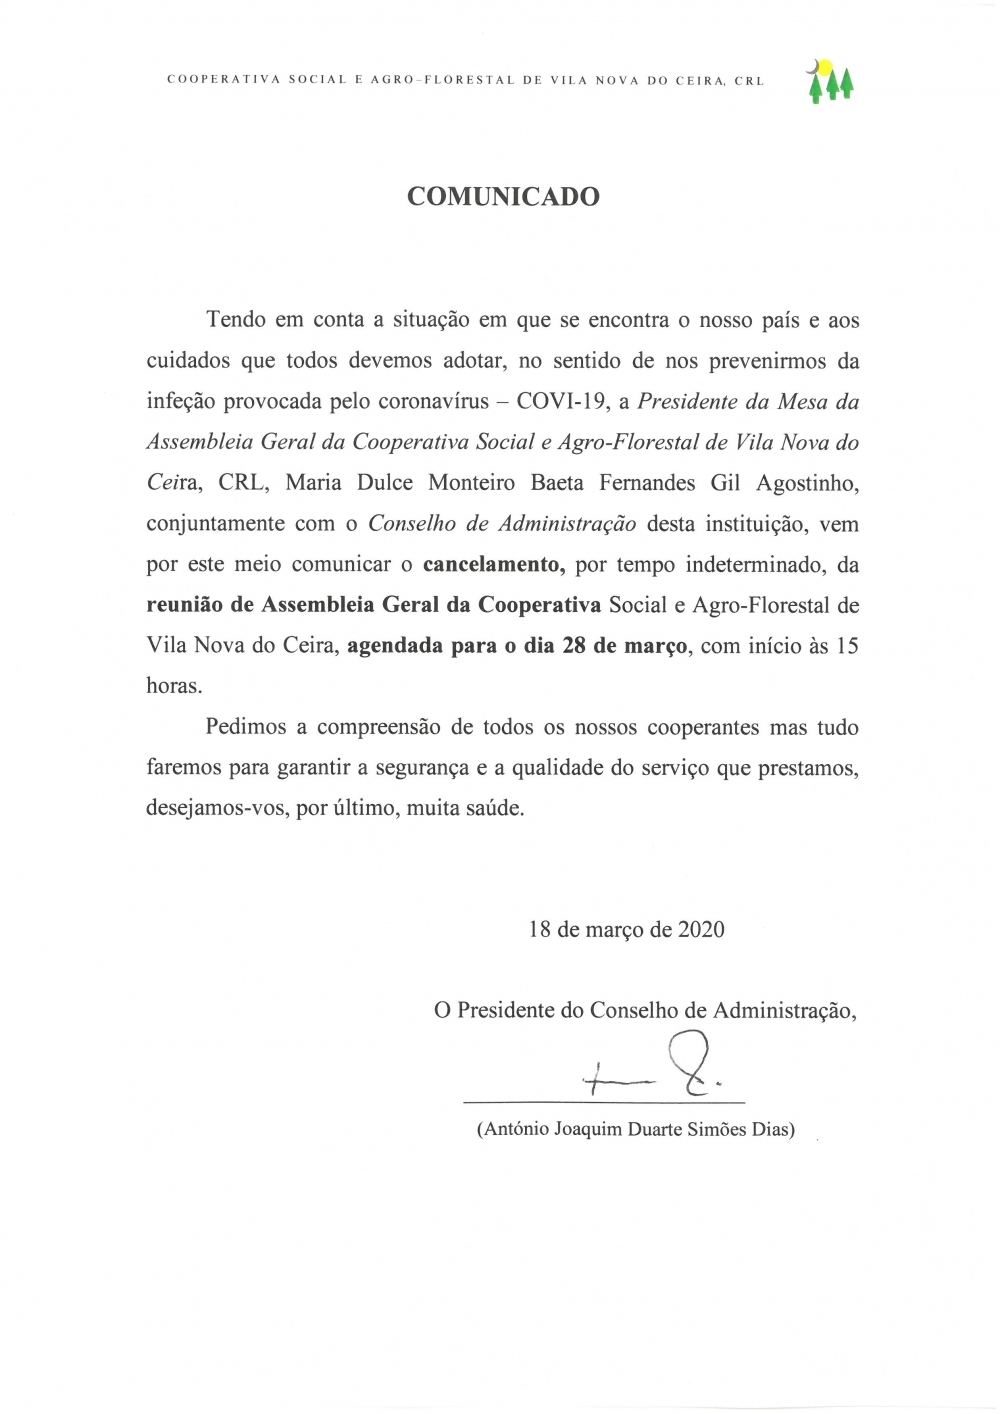 COMUNICADO 1 / 2020 - CANCELAMENTO ASSEMBLEIA GERAL - 28 de MARÇO de 2020 - www.coopvnc.pt